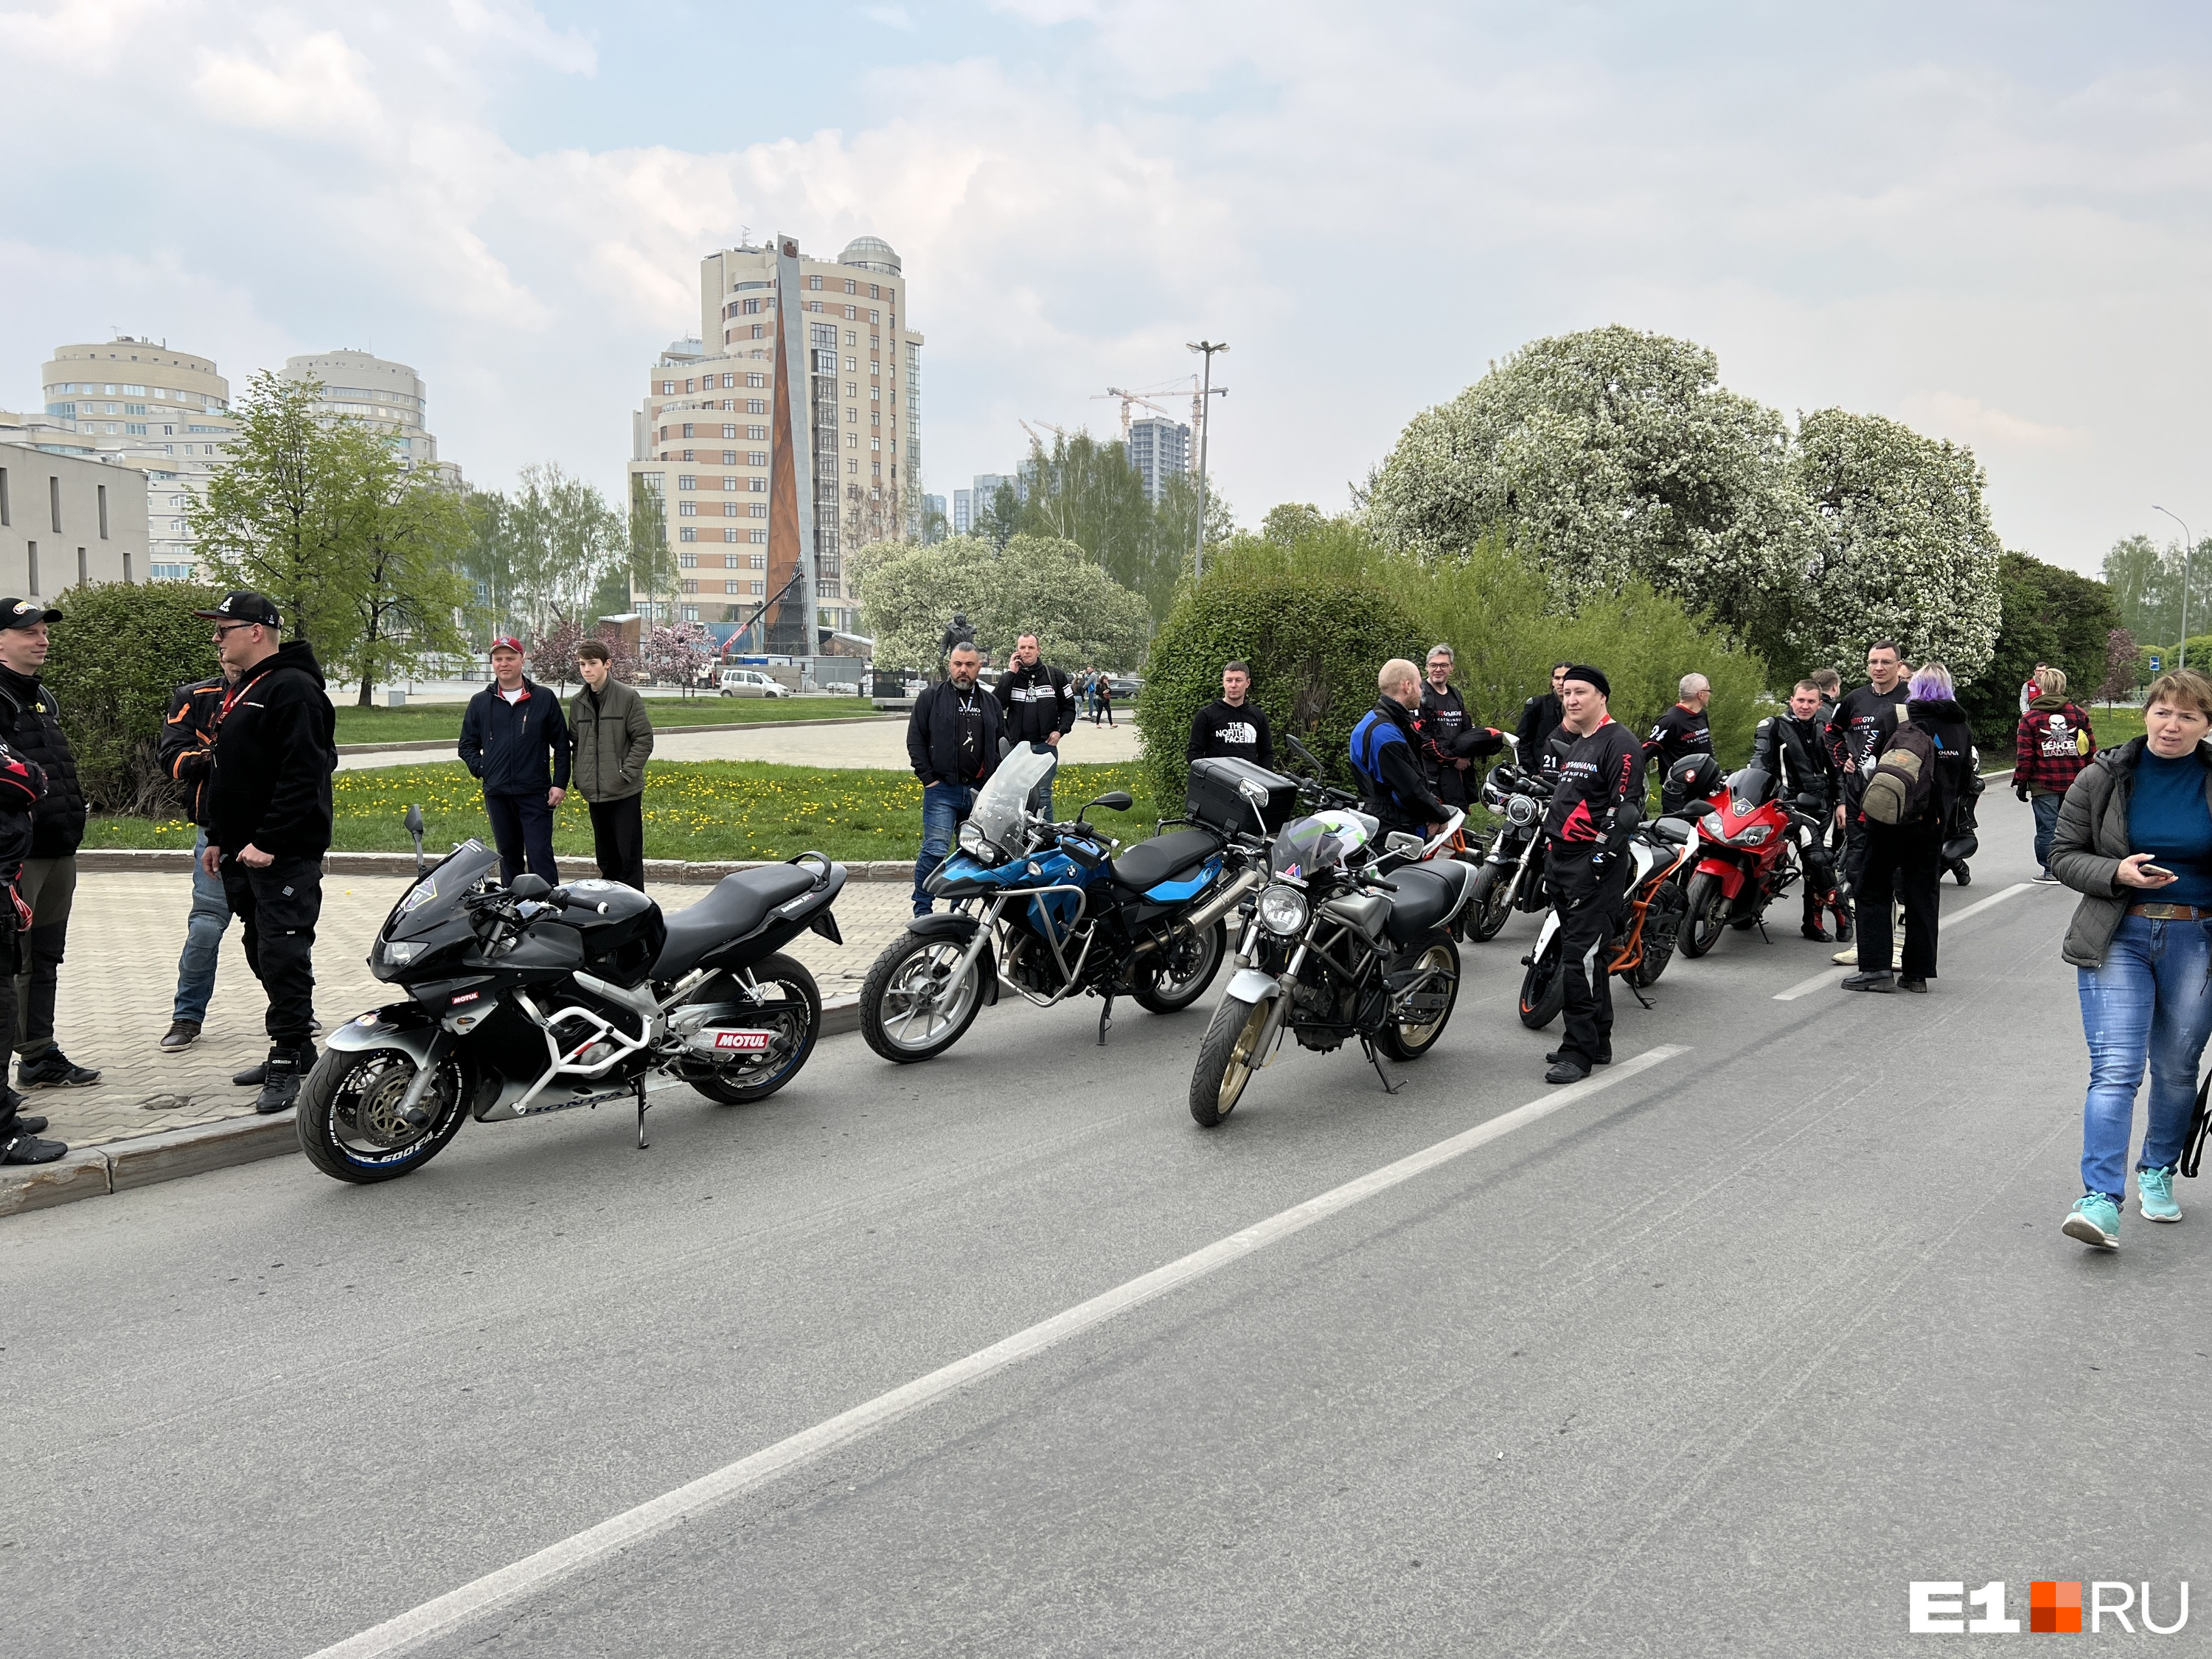 Байкеры заполонили Екатеринбург: 18 фото с ревущими моторами и брутальными водителями